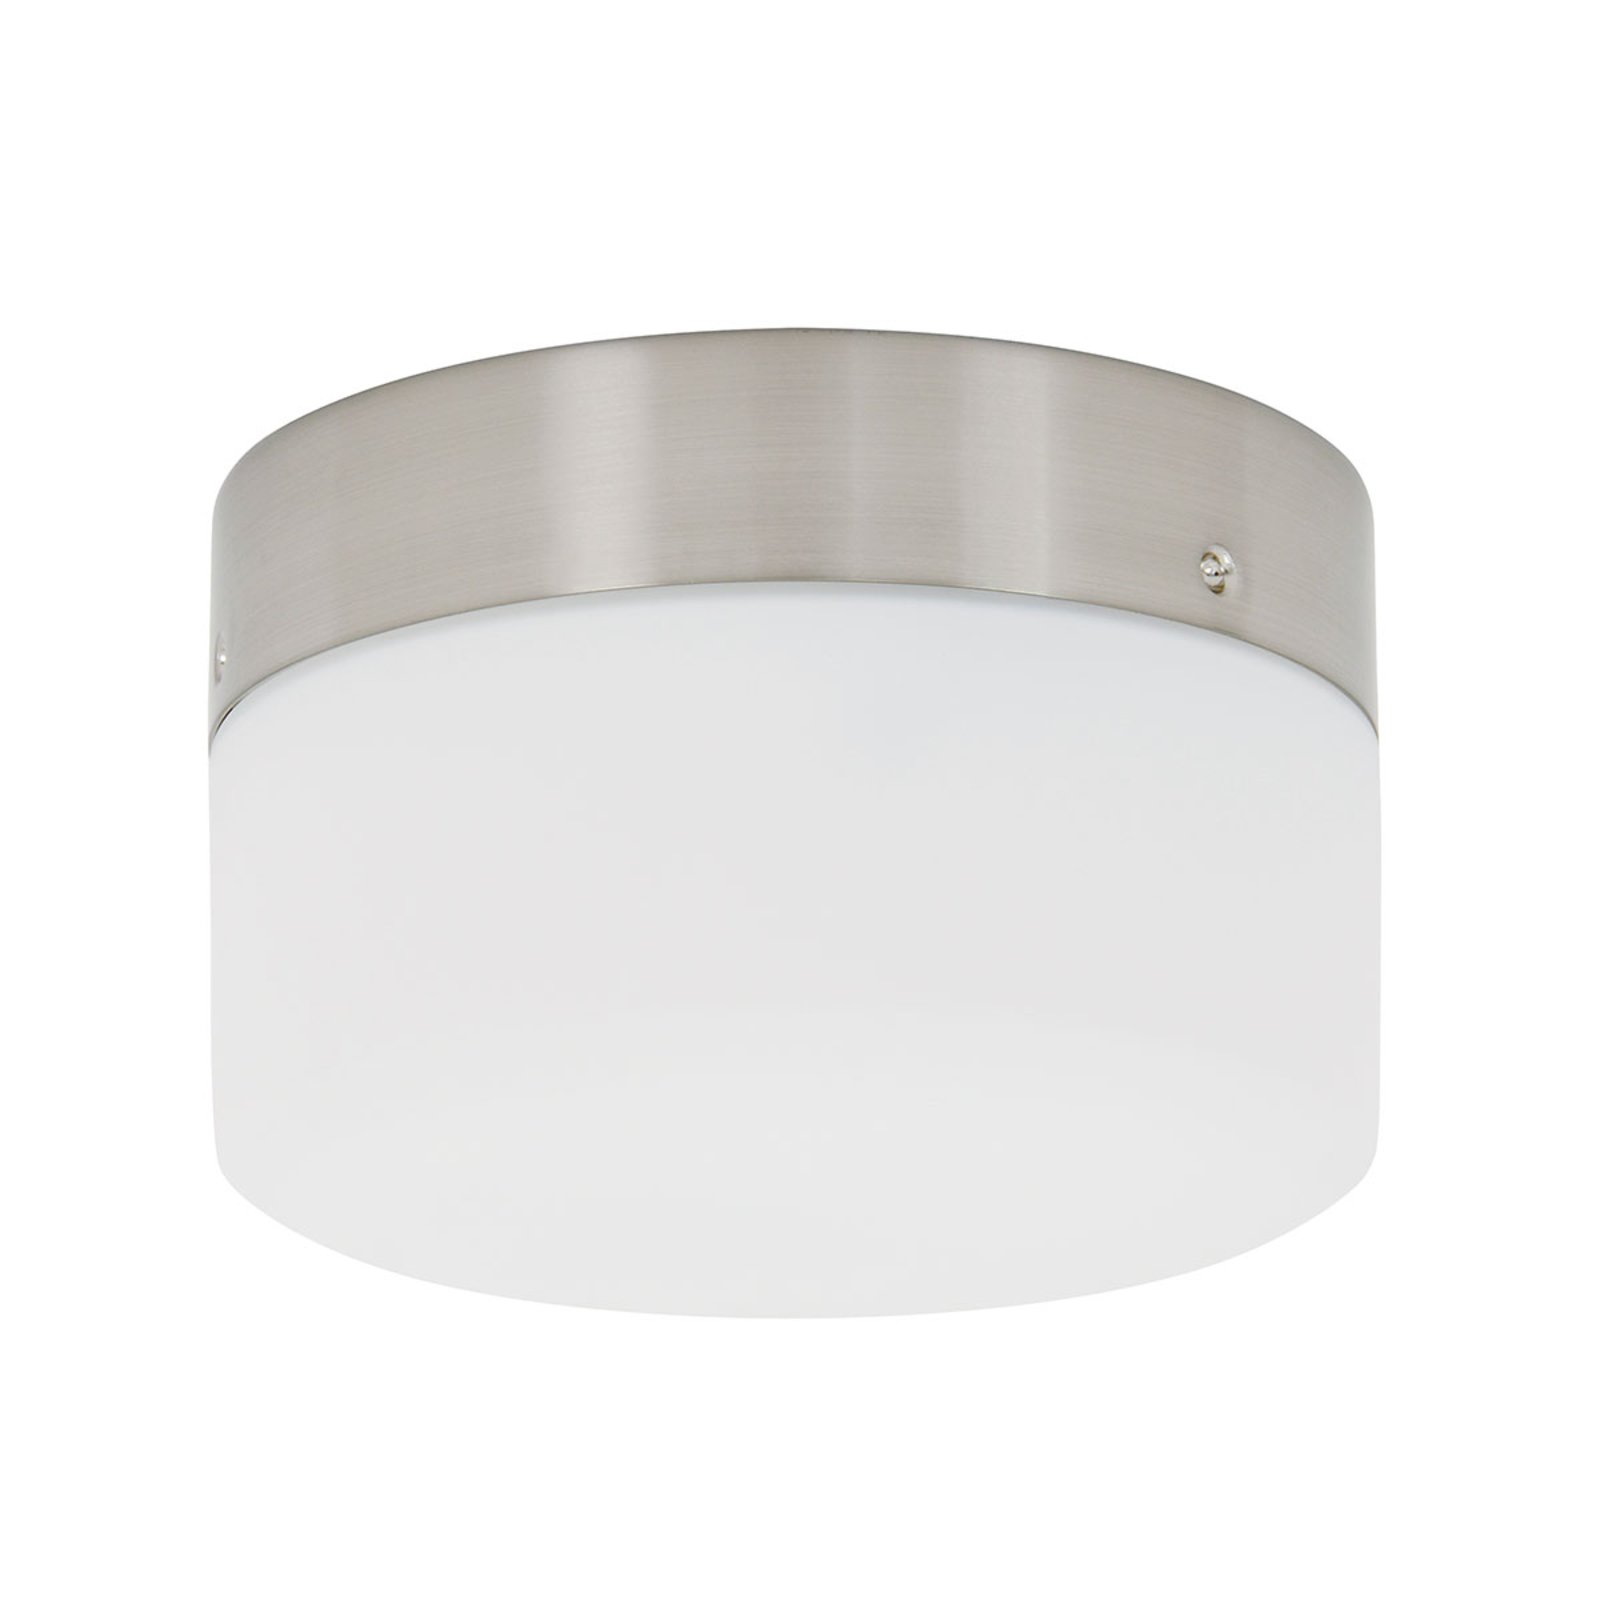 Light kit for ceiling fan - GX53 brushed chrome